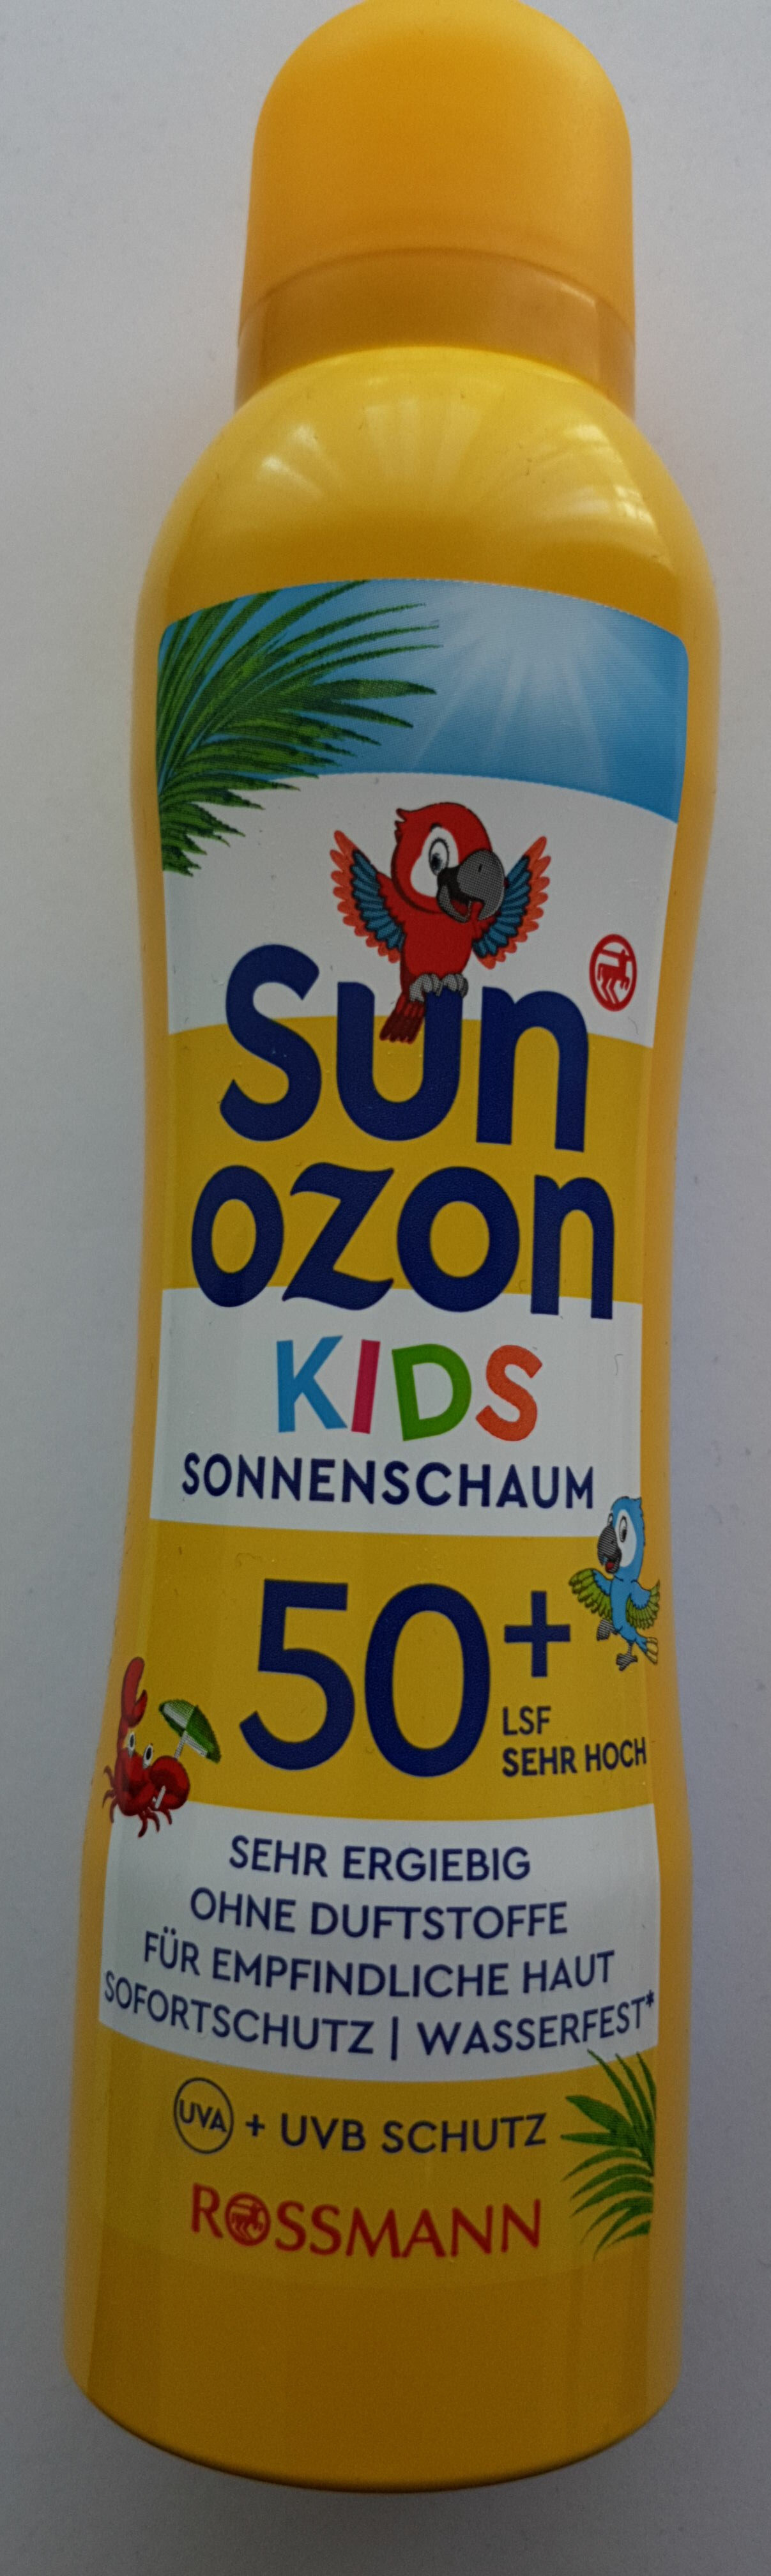 Sun ozon kids - Tuote - de